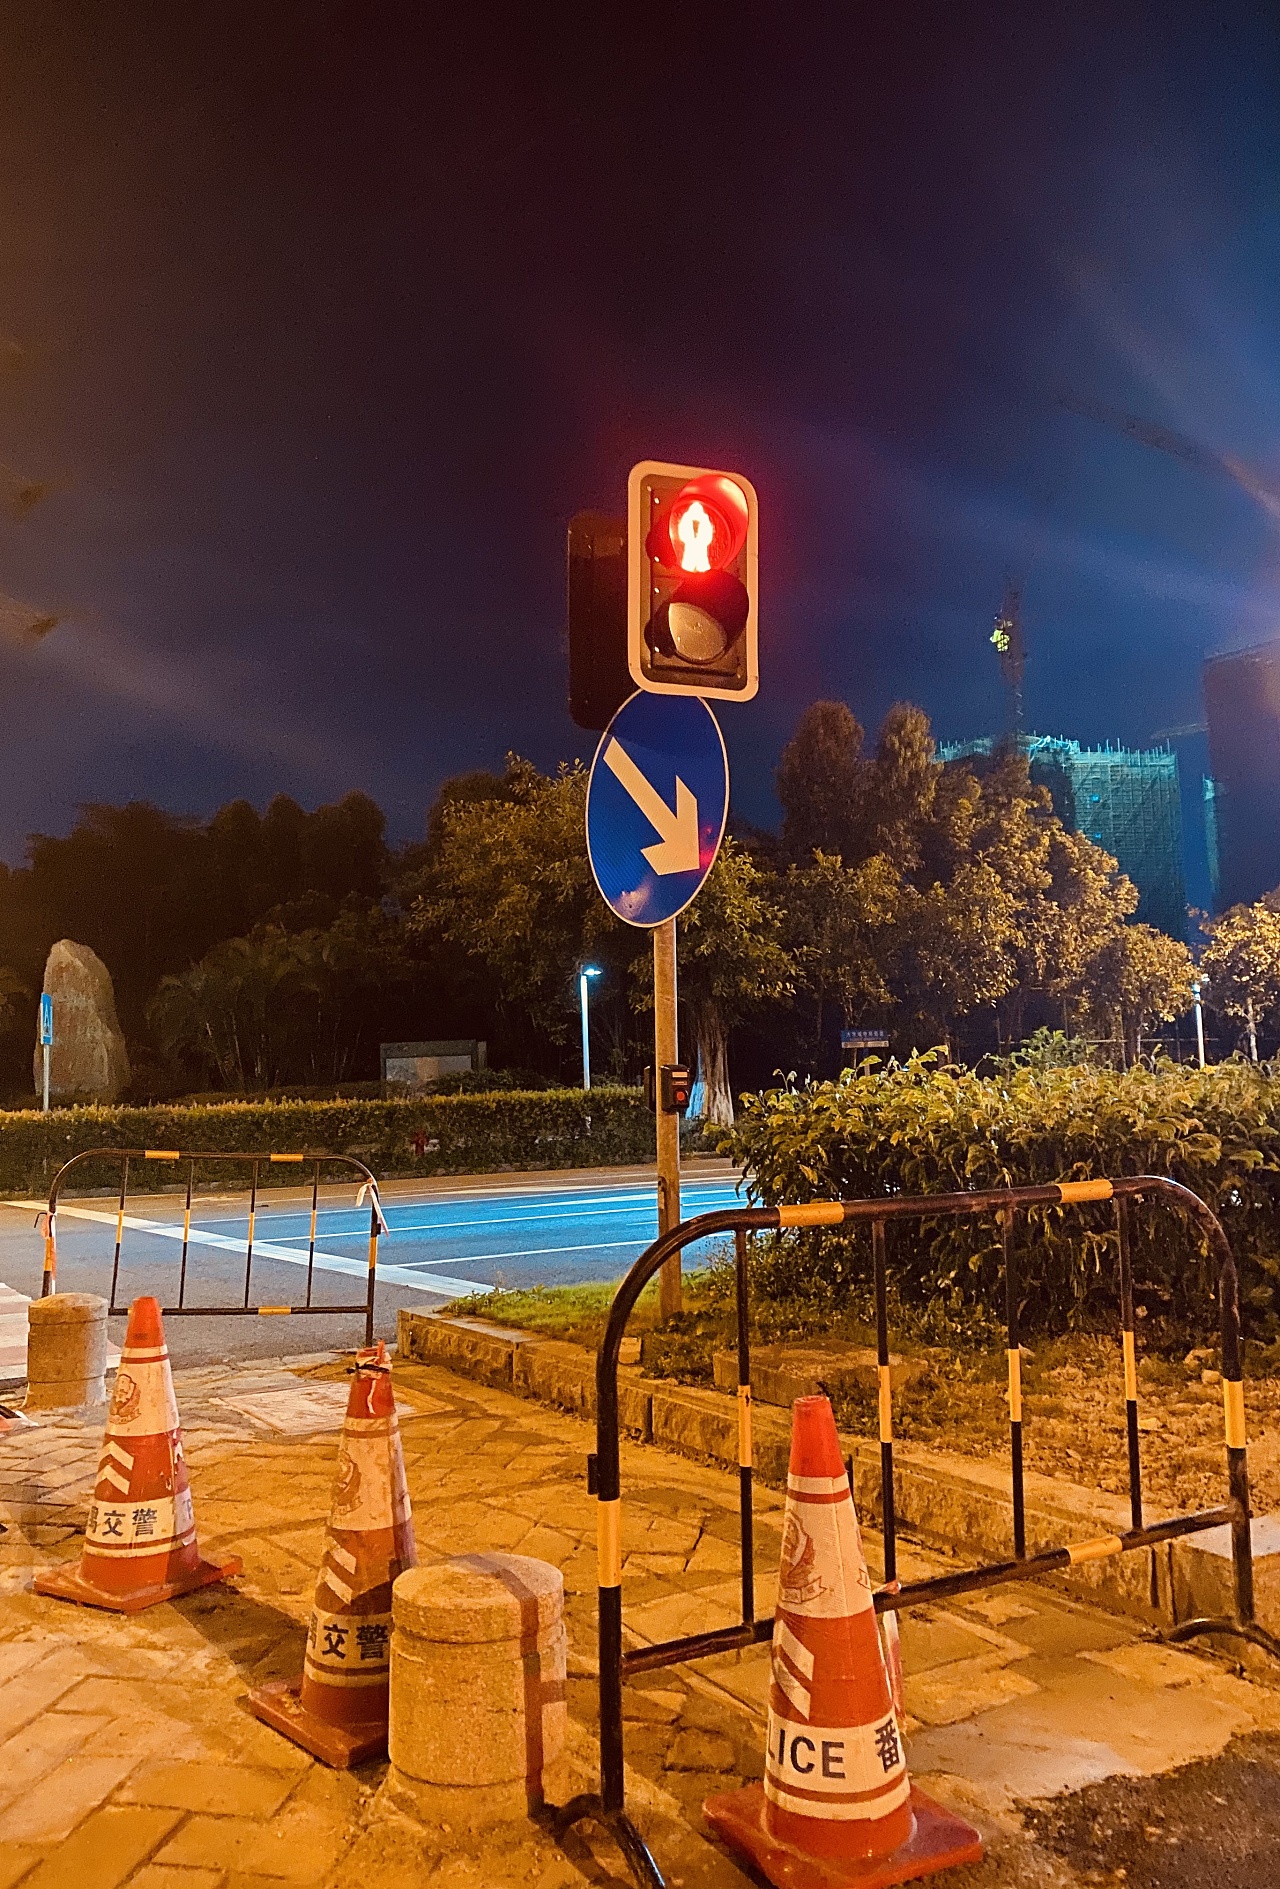 红绿灯路口夜景照片图片